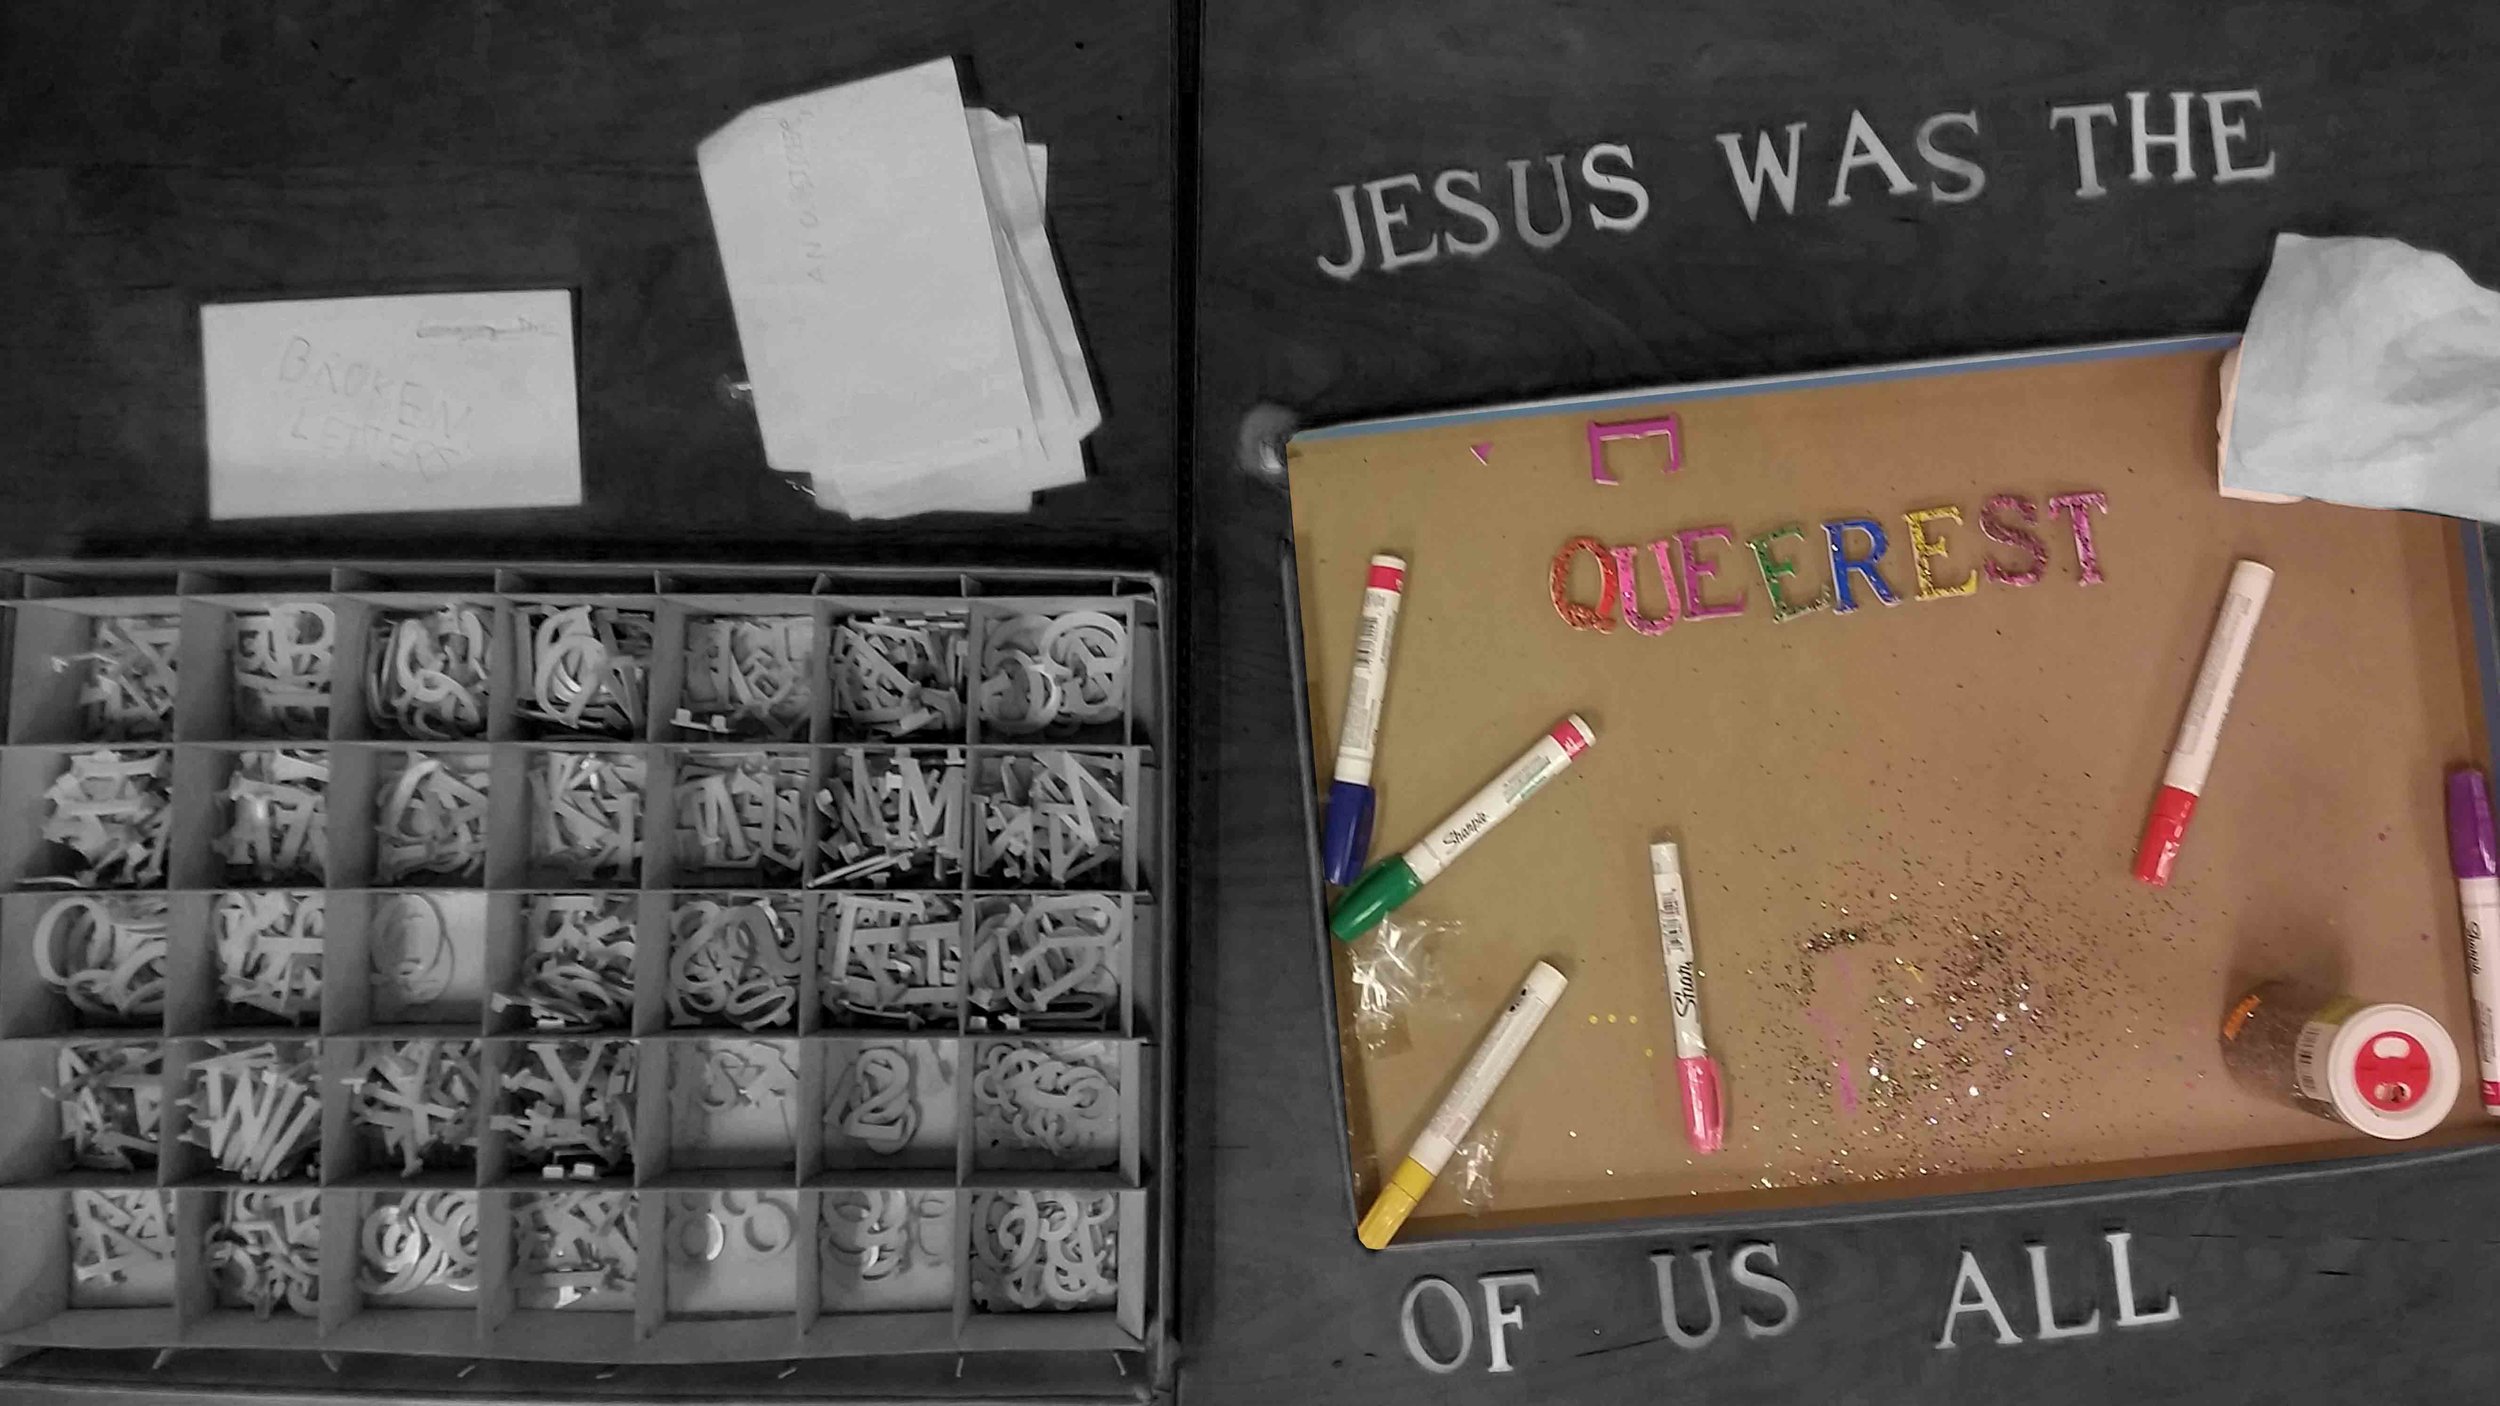 jesus was the queerest.jpg